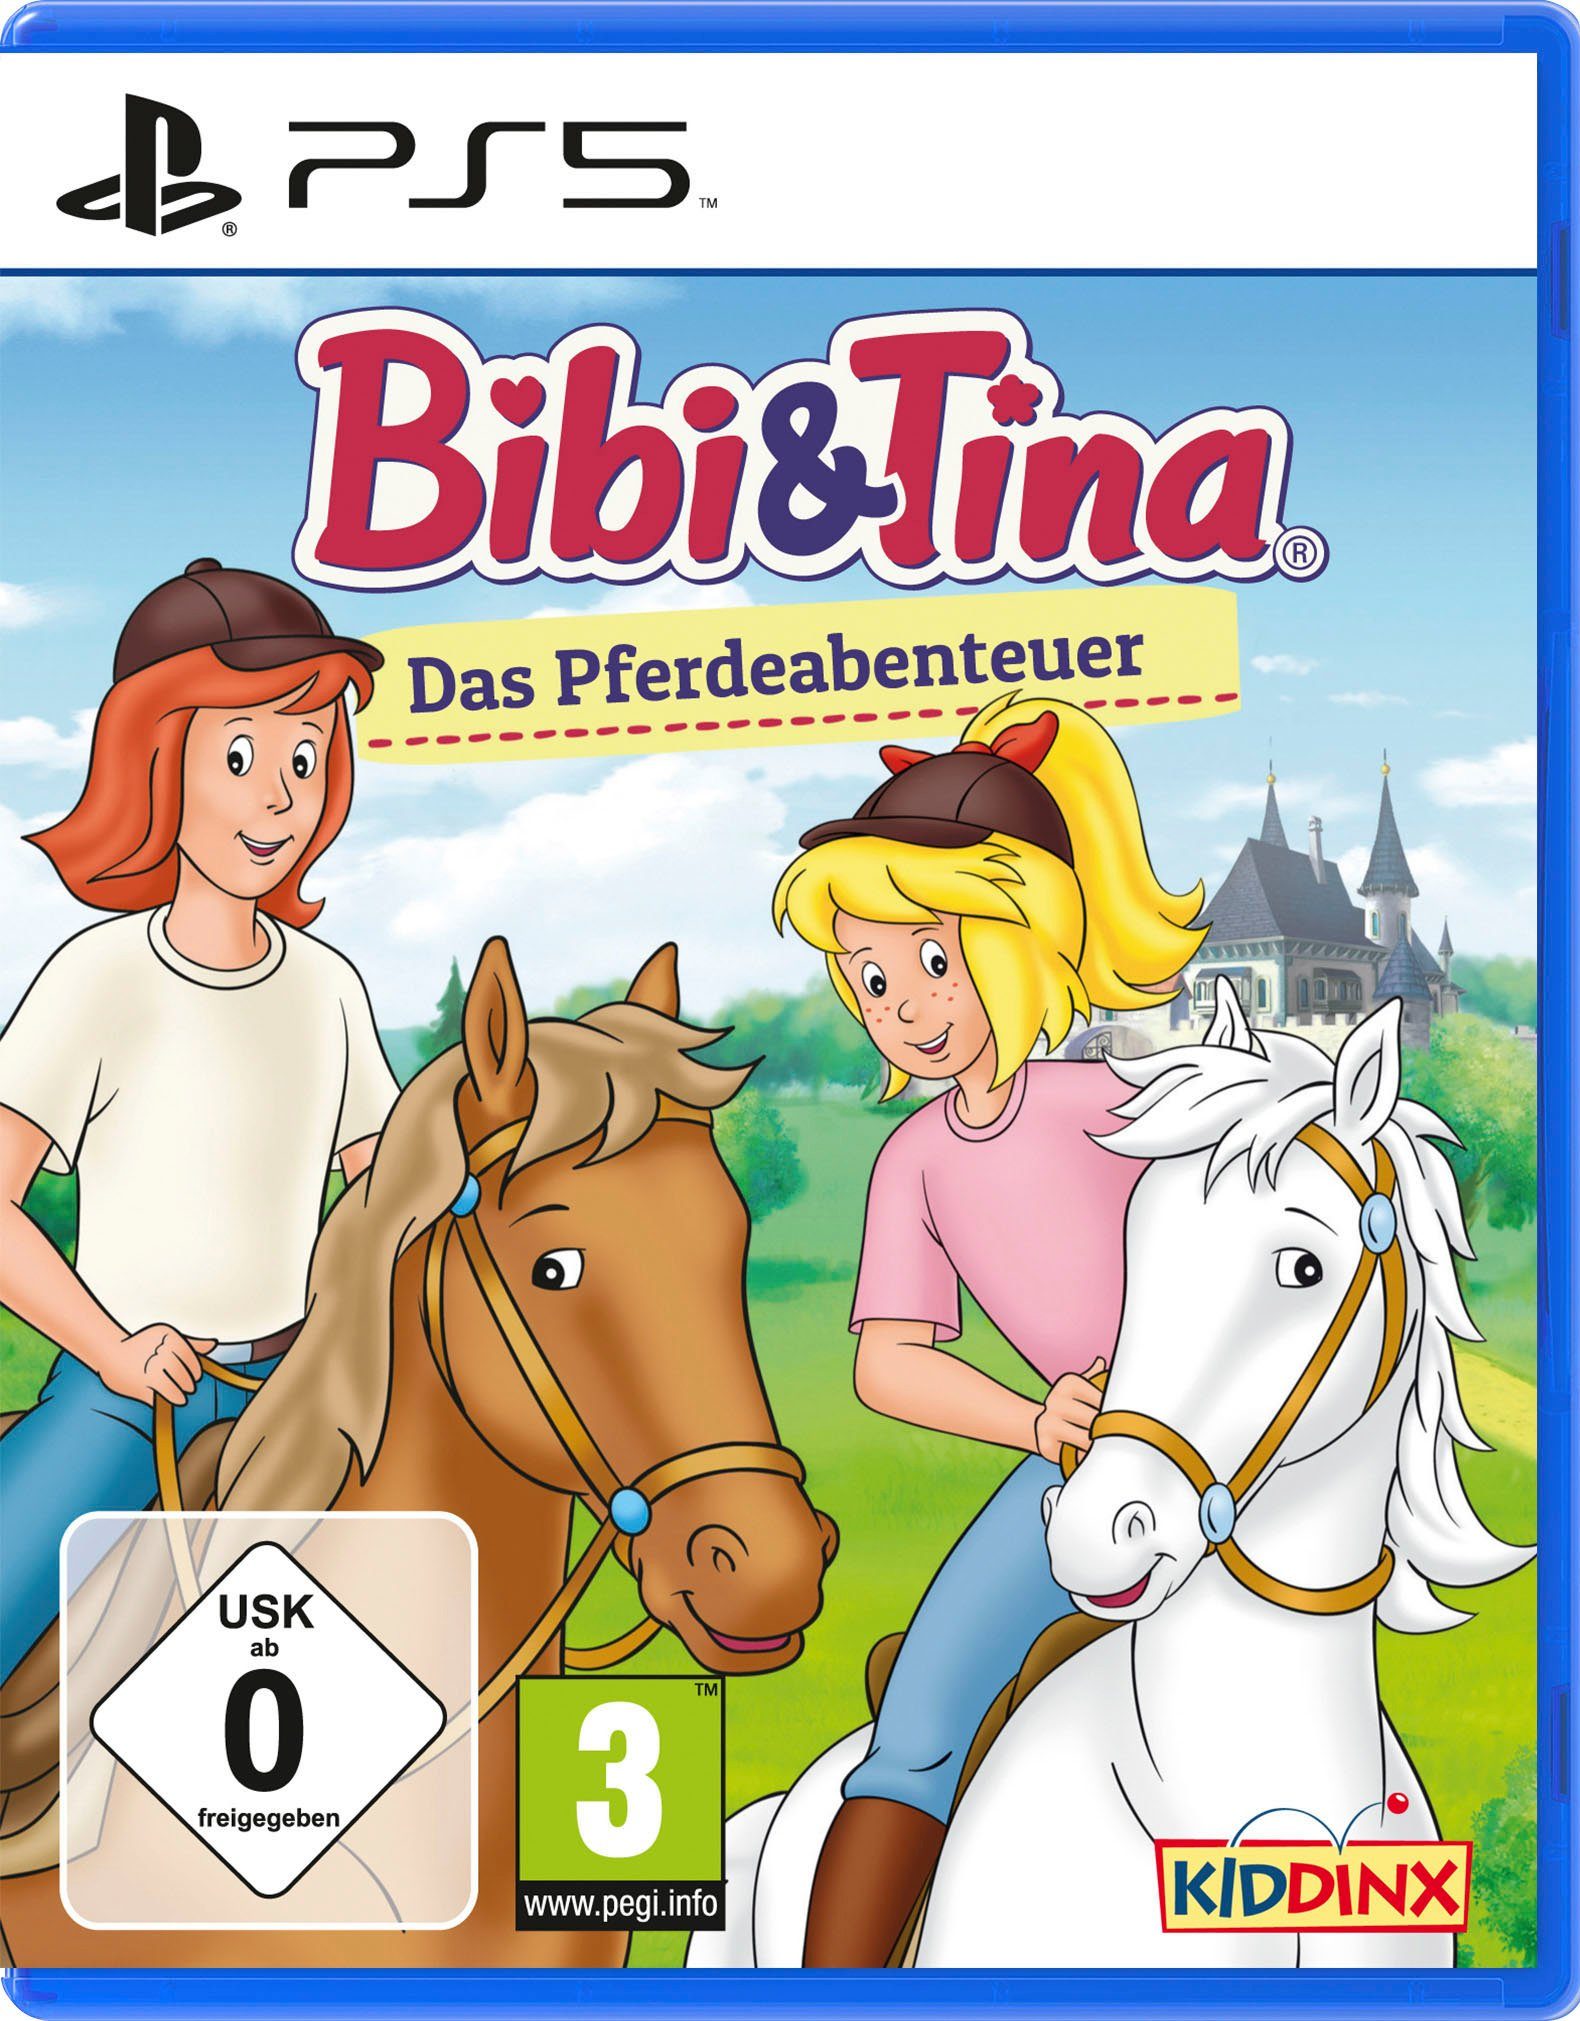 & Das Tina: Bibi PlayStation 5 Pferdeabenteuer